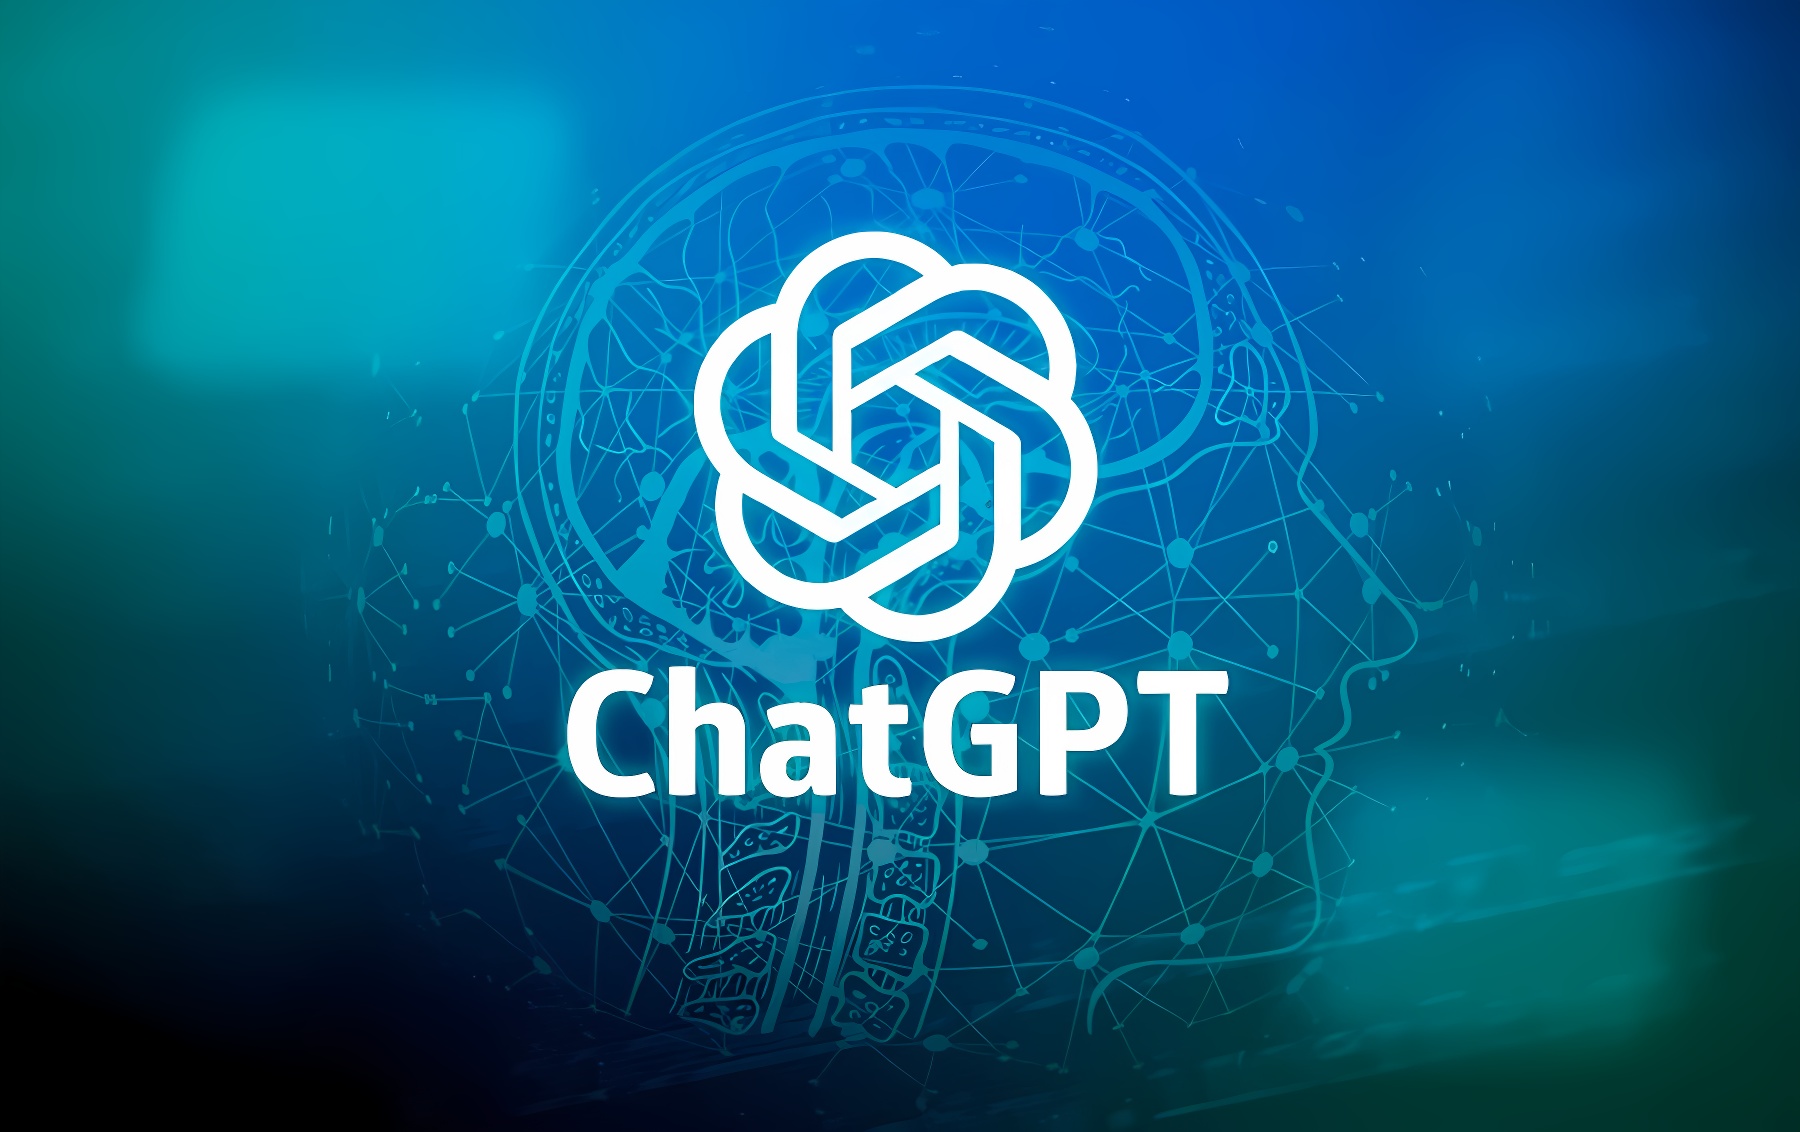 这是一张图片，展示了蓝色背景上的“ChatGPT”字样和一个由线条组成的复杂图案，整体给人科技感。